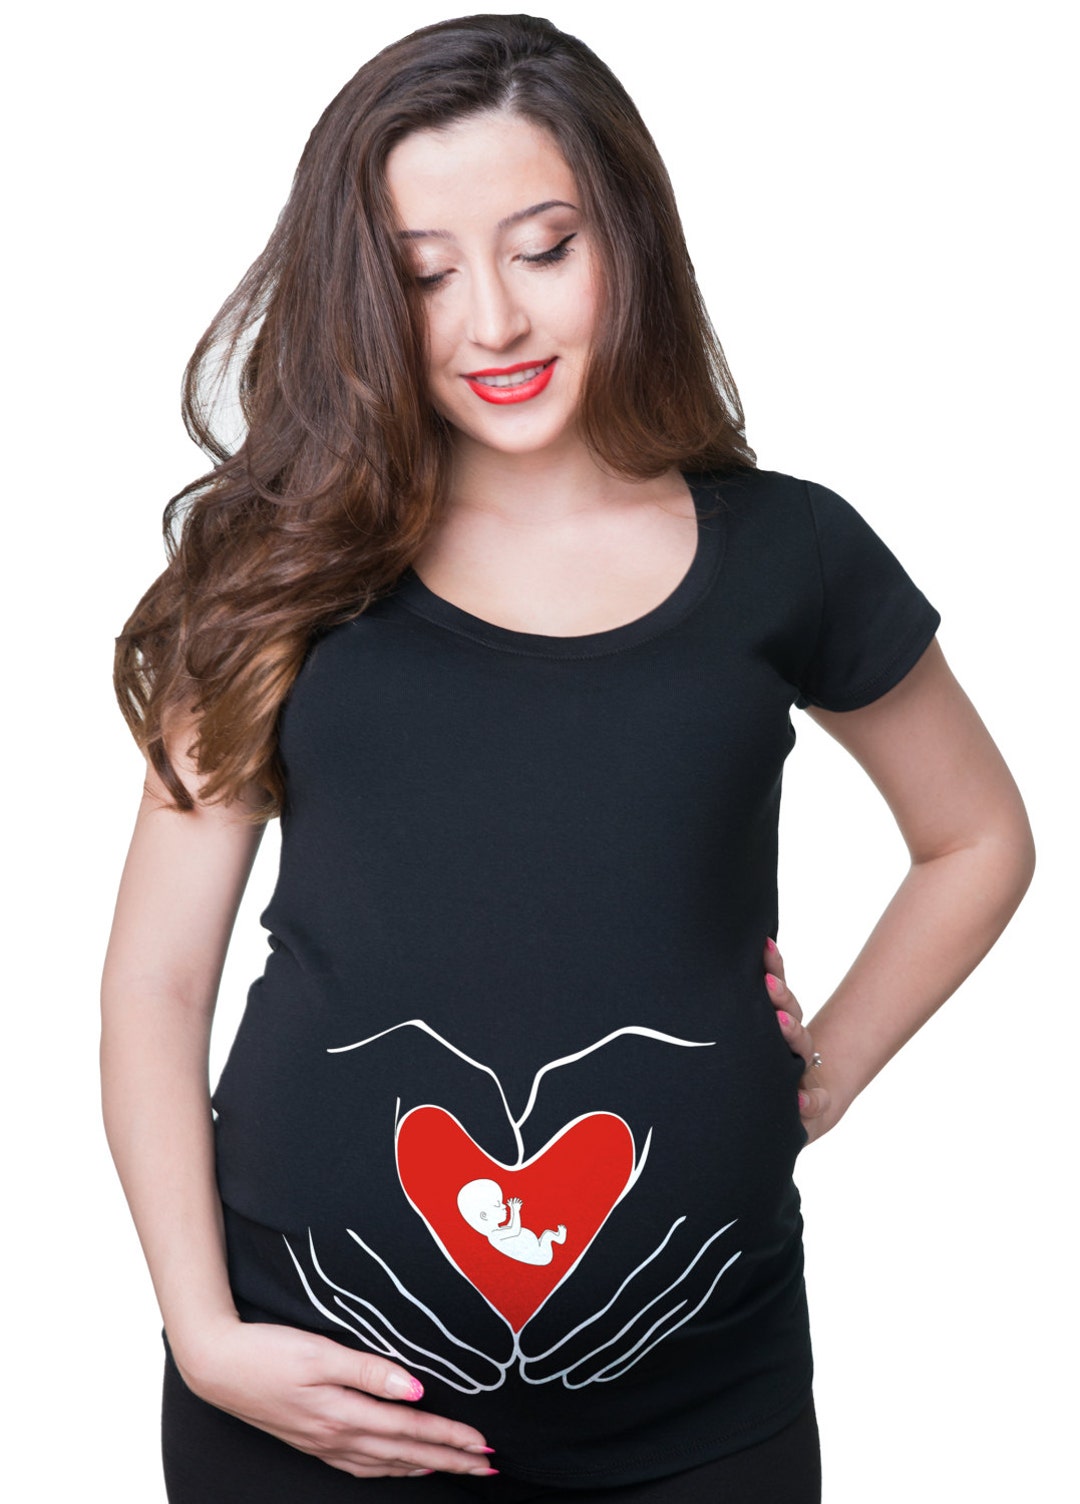 Maternity Tees Baby Heart Love T Shirt Mom Funny Maternity - Etsy